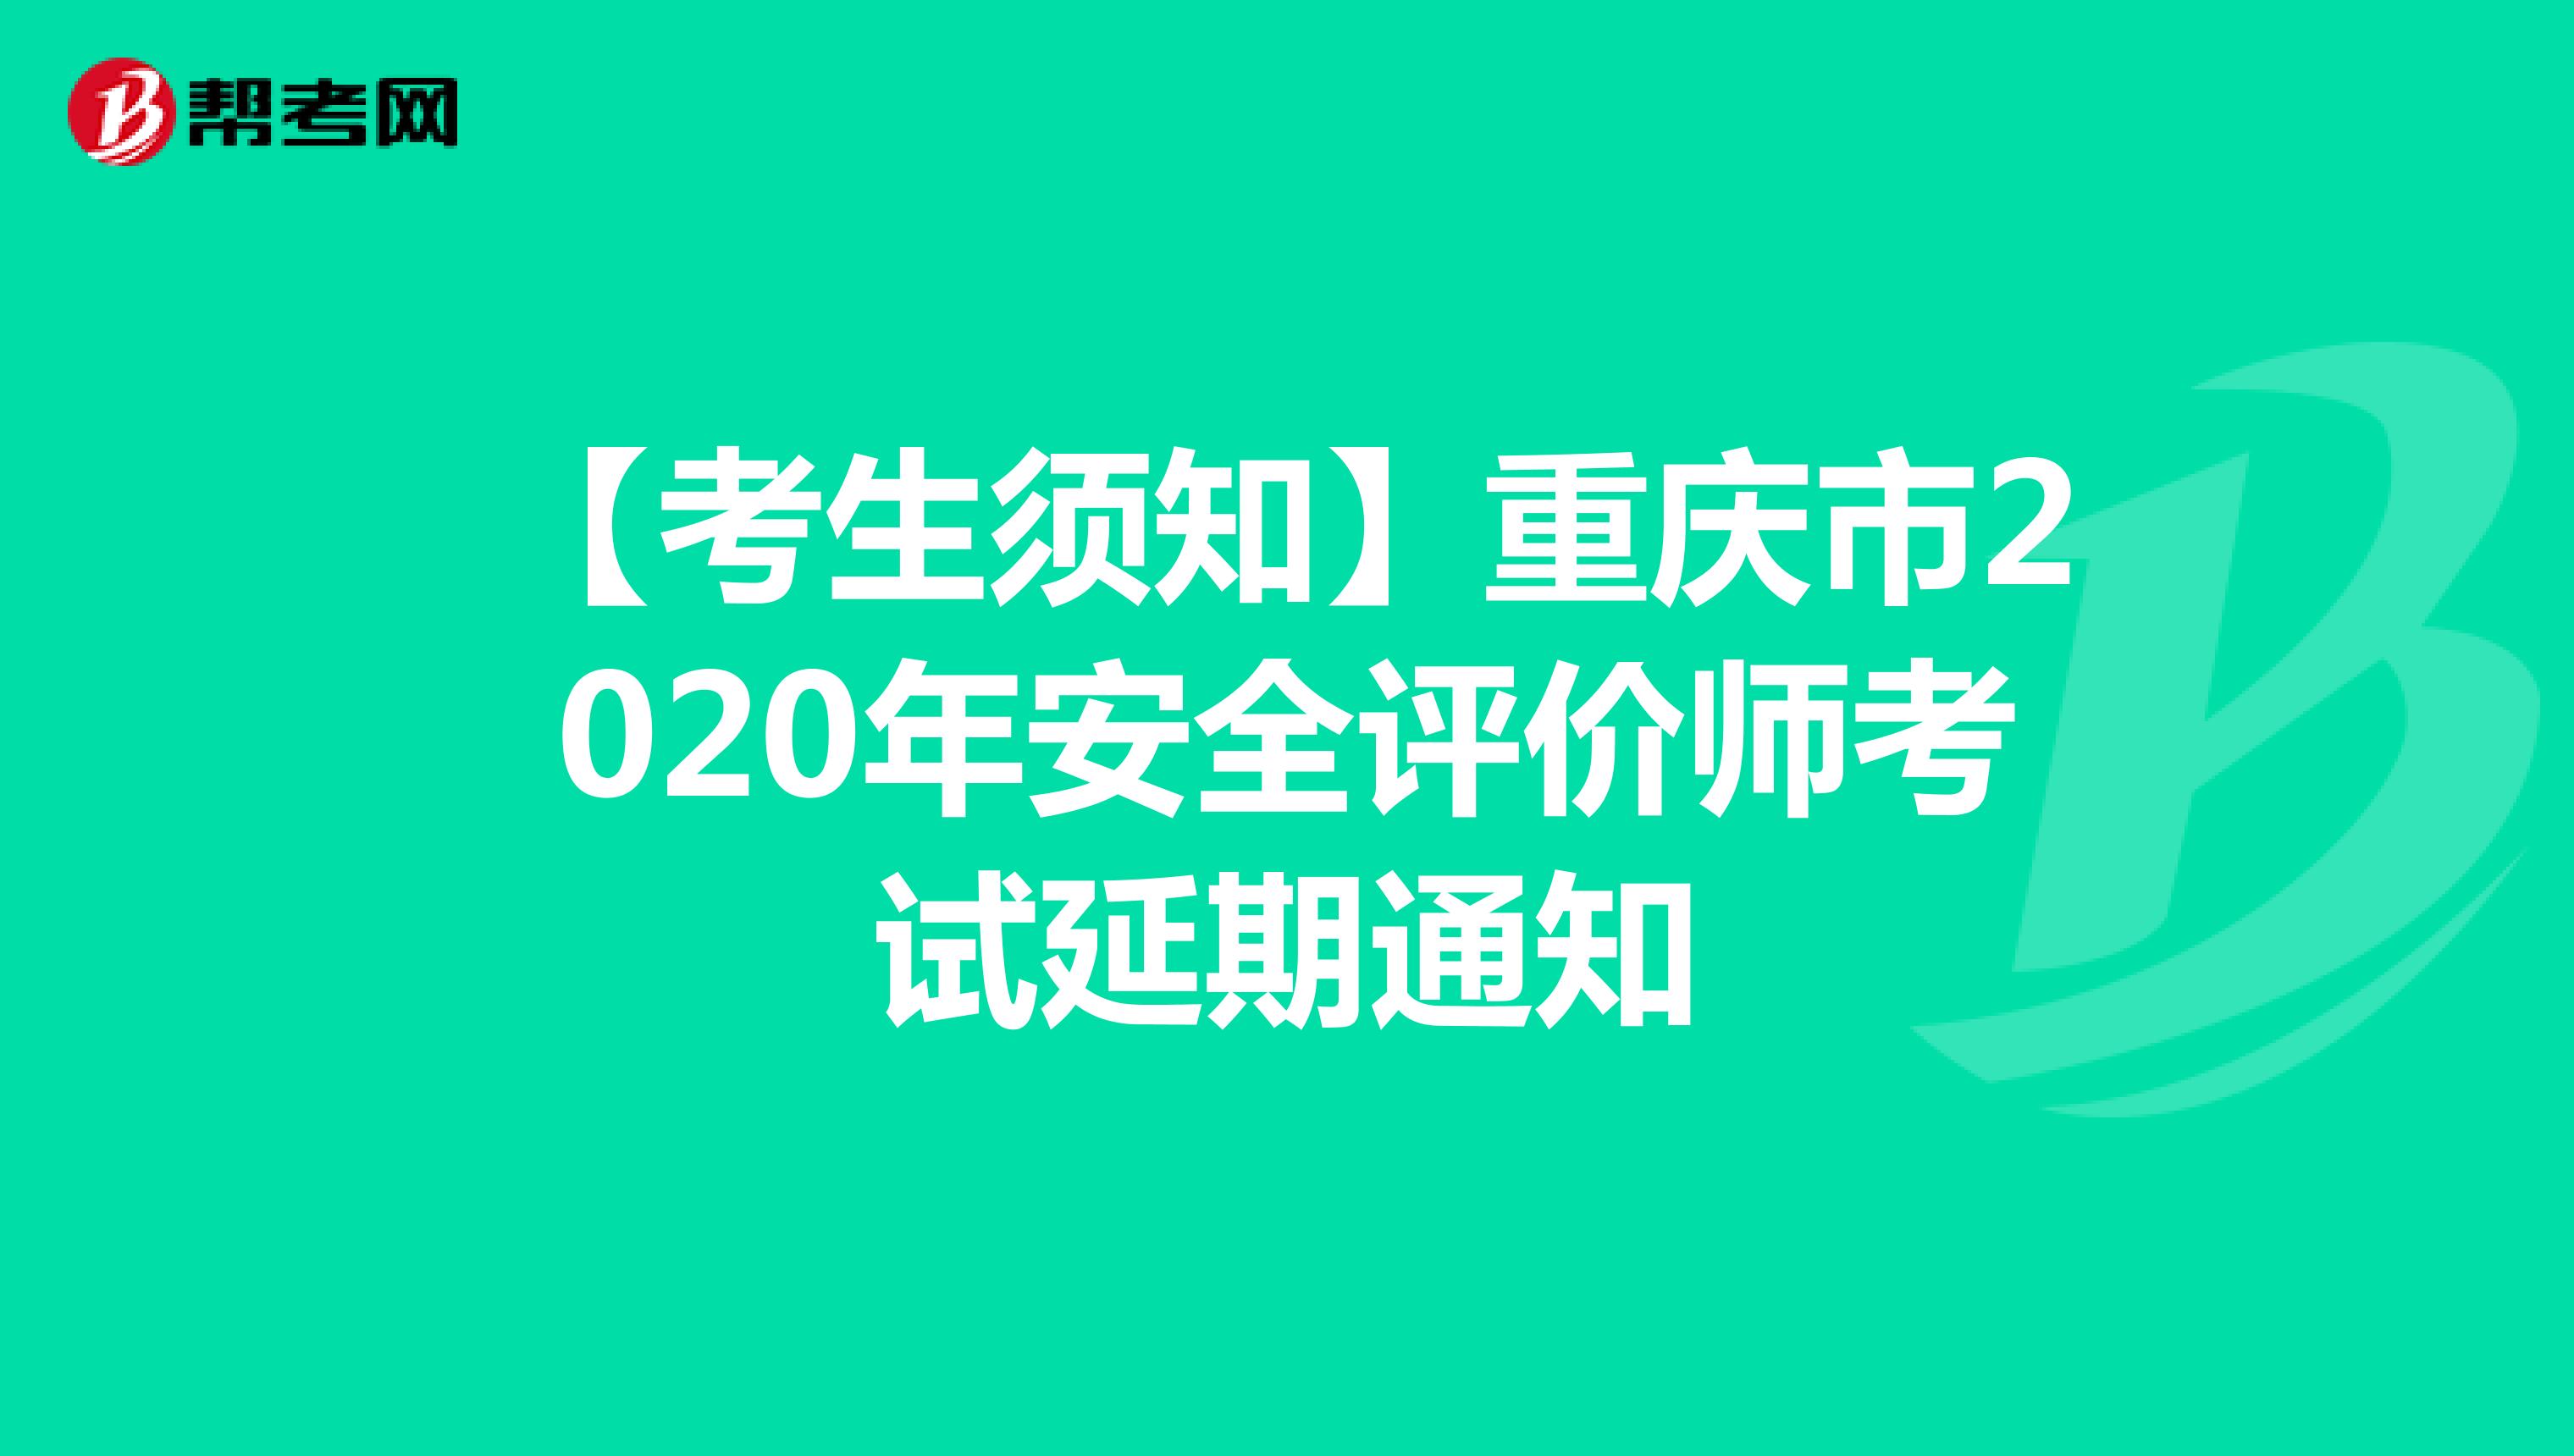 【考生须知】重庆市2020年安全评价师考试延期通知